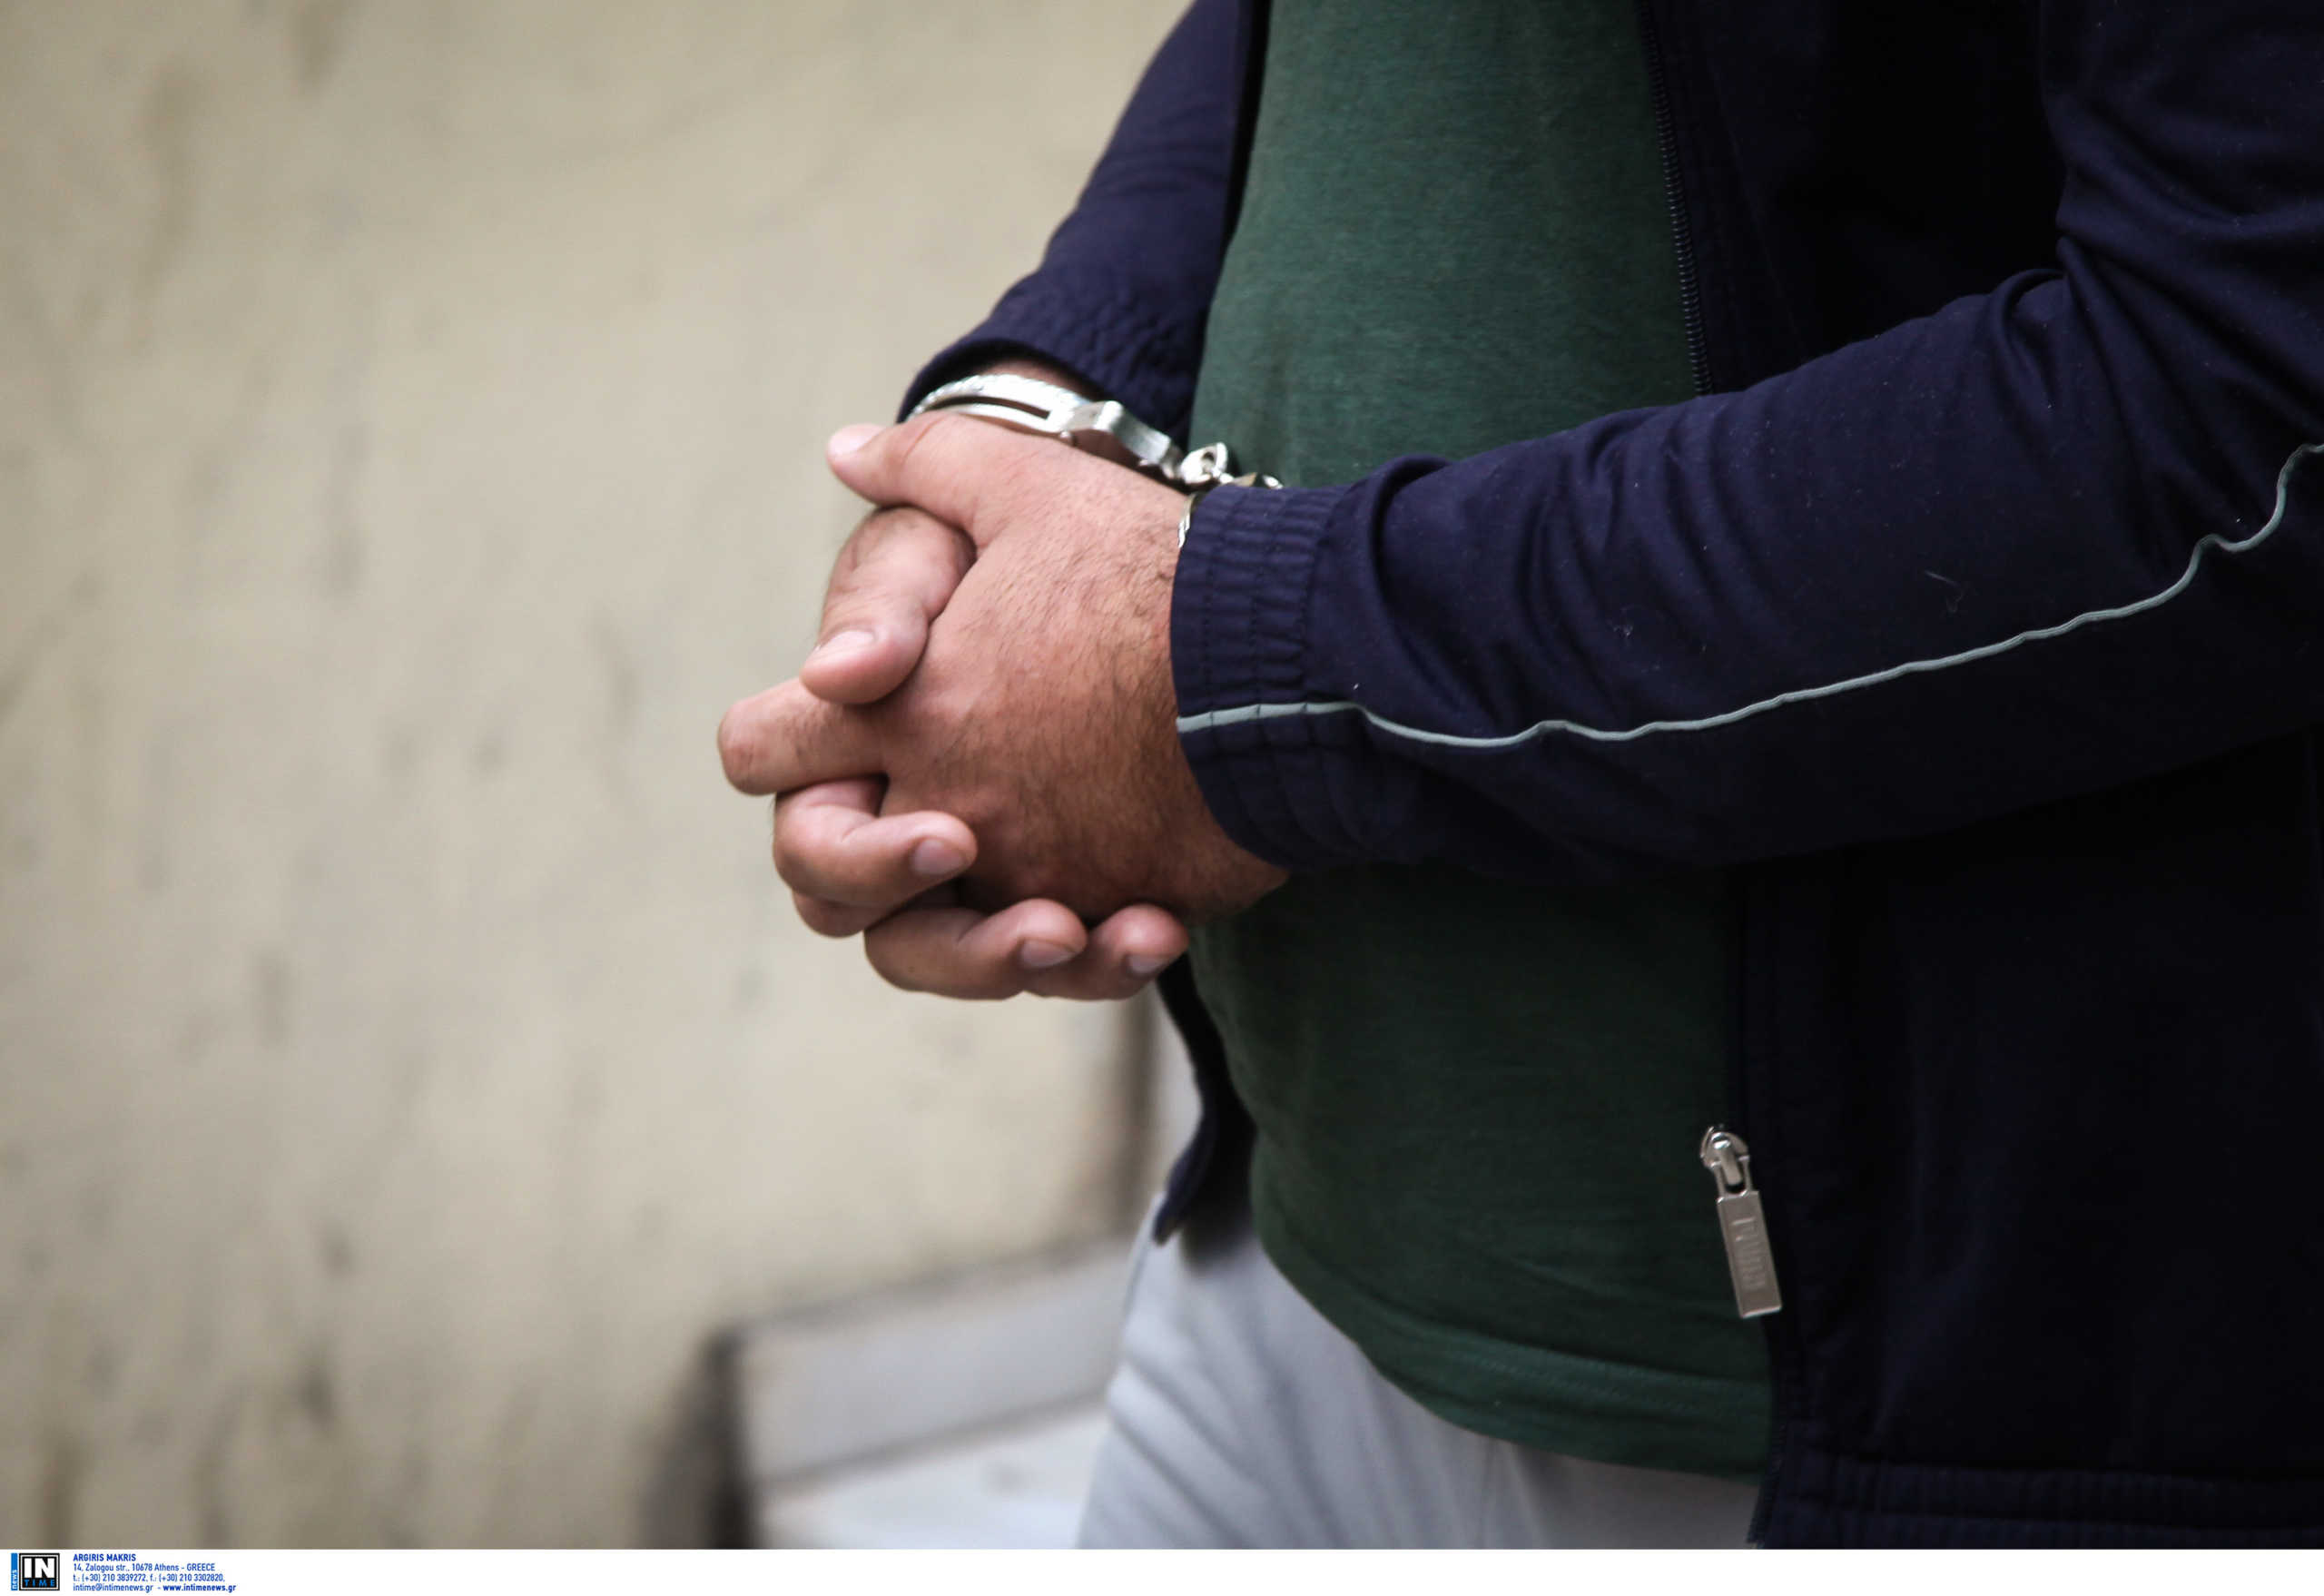 Ηράκλειο: Προφυλακίστηκε για το ξύλο στην σύντροφό του – Στην εντατική η γυναίκα